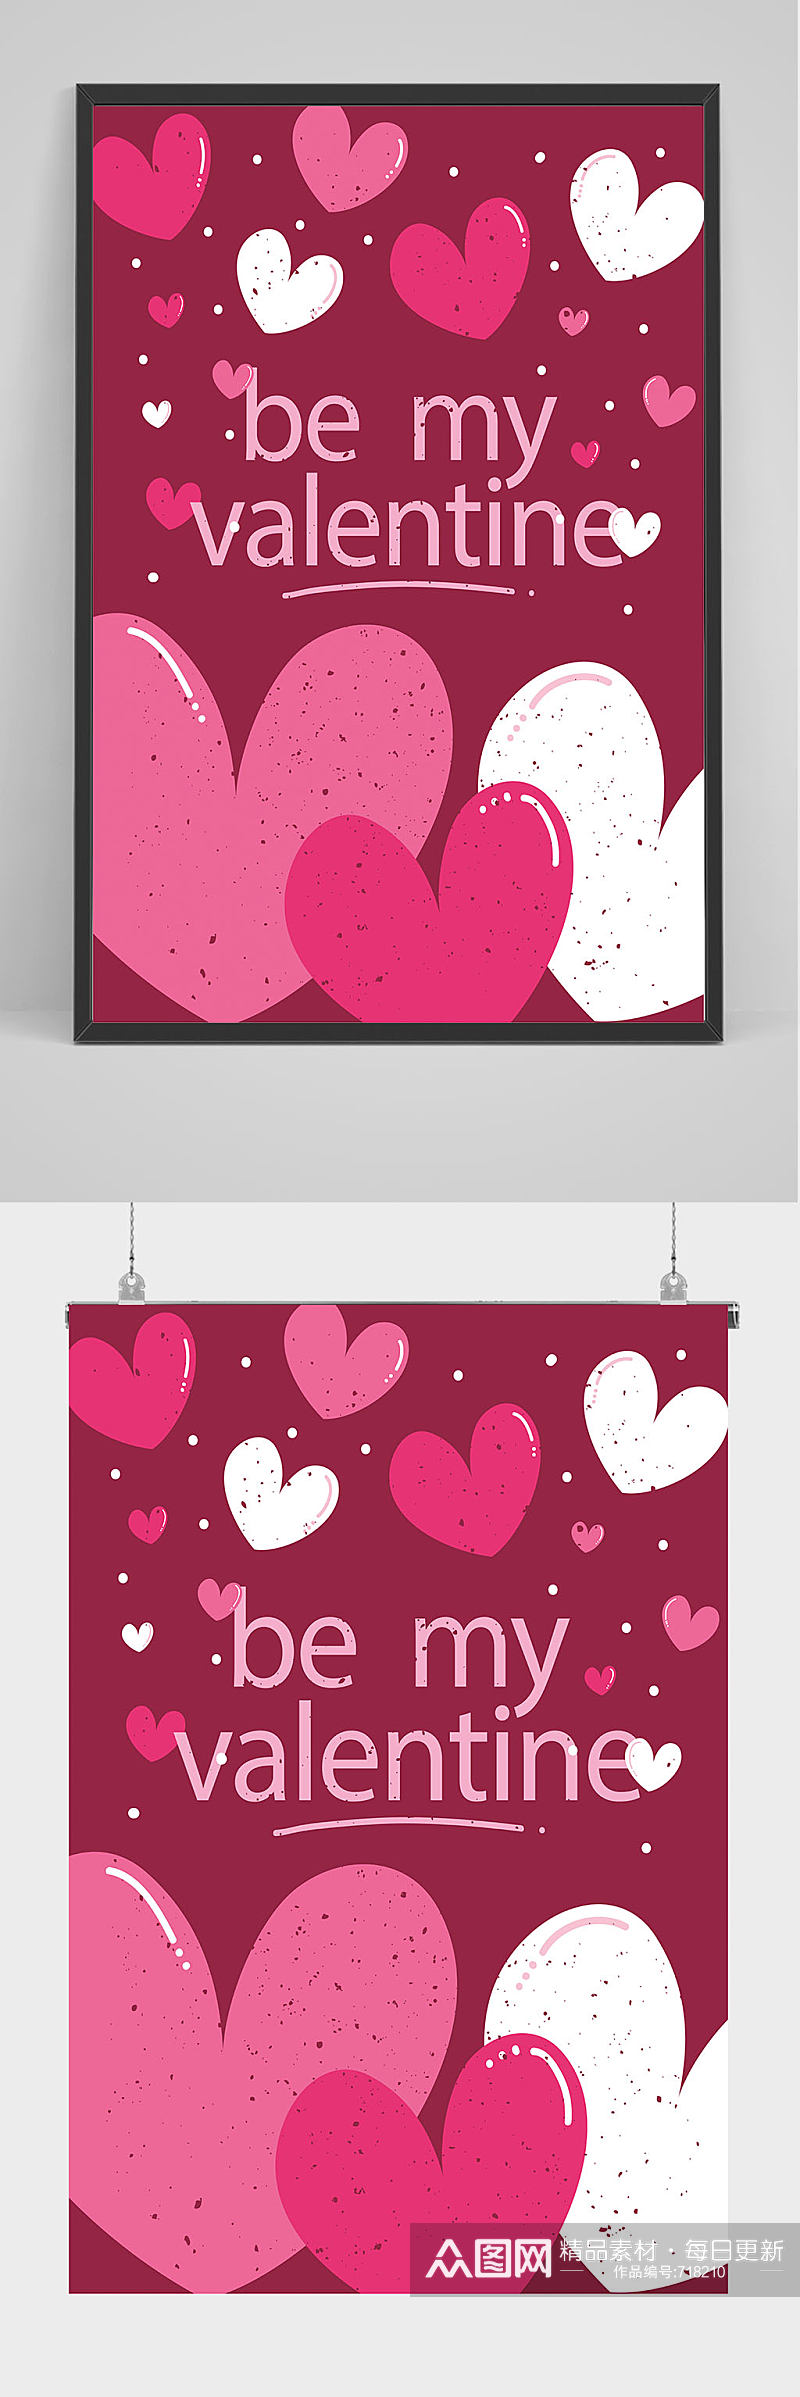 创意心形图形爱情海报设计素材